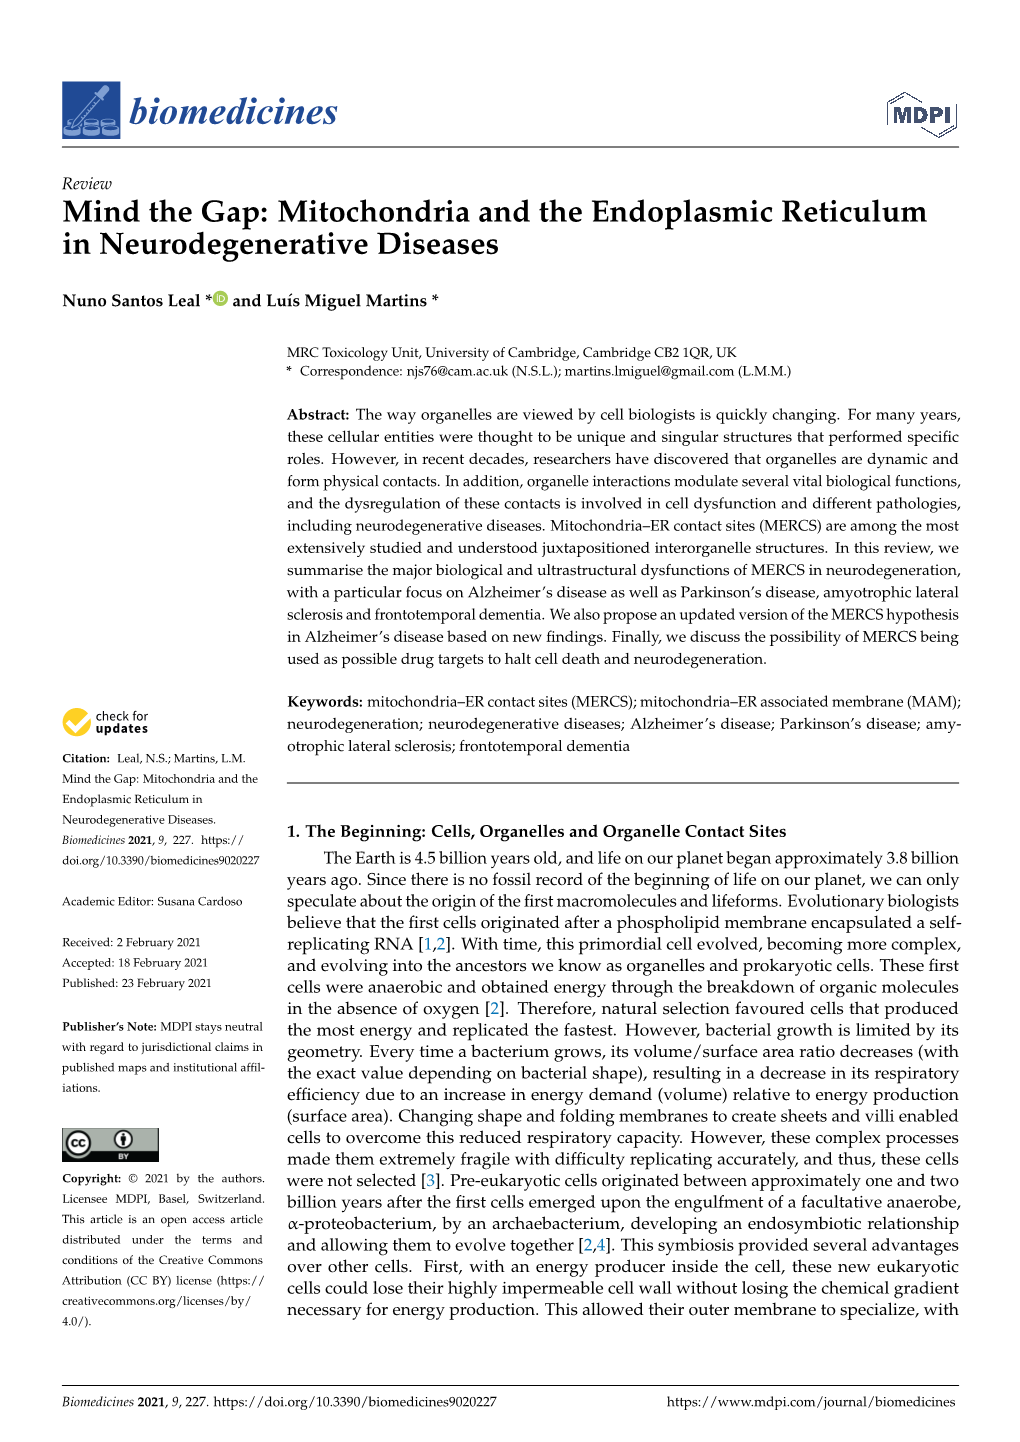 Mitochondria and the Endoplasmic Reticulum in Neurodegenerative Diseases